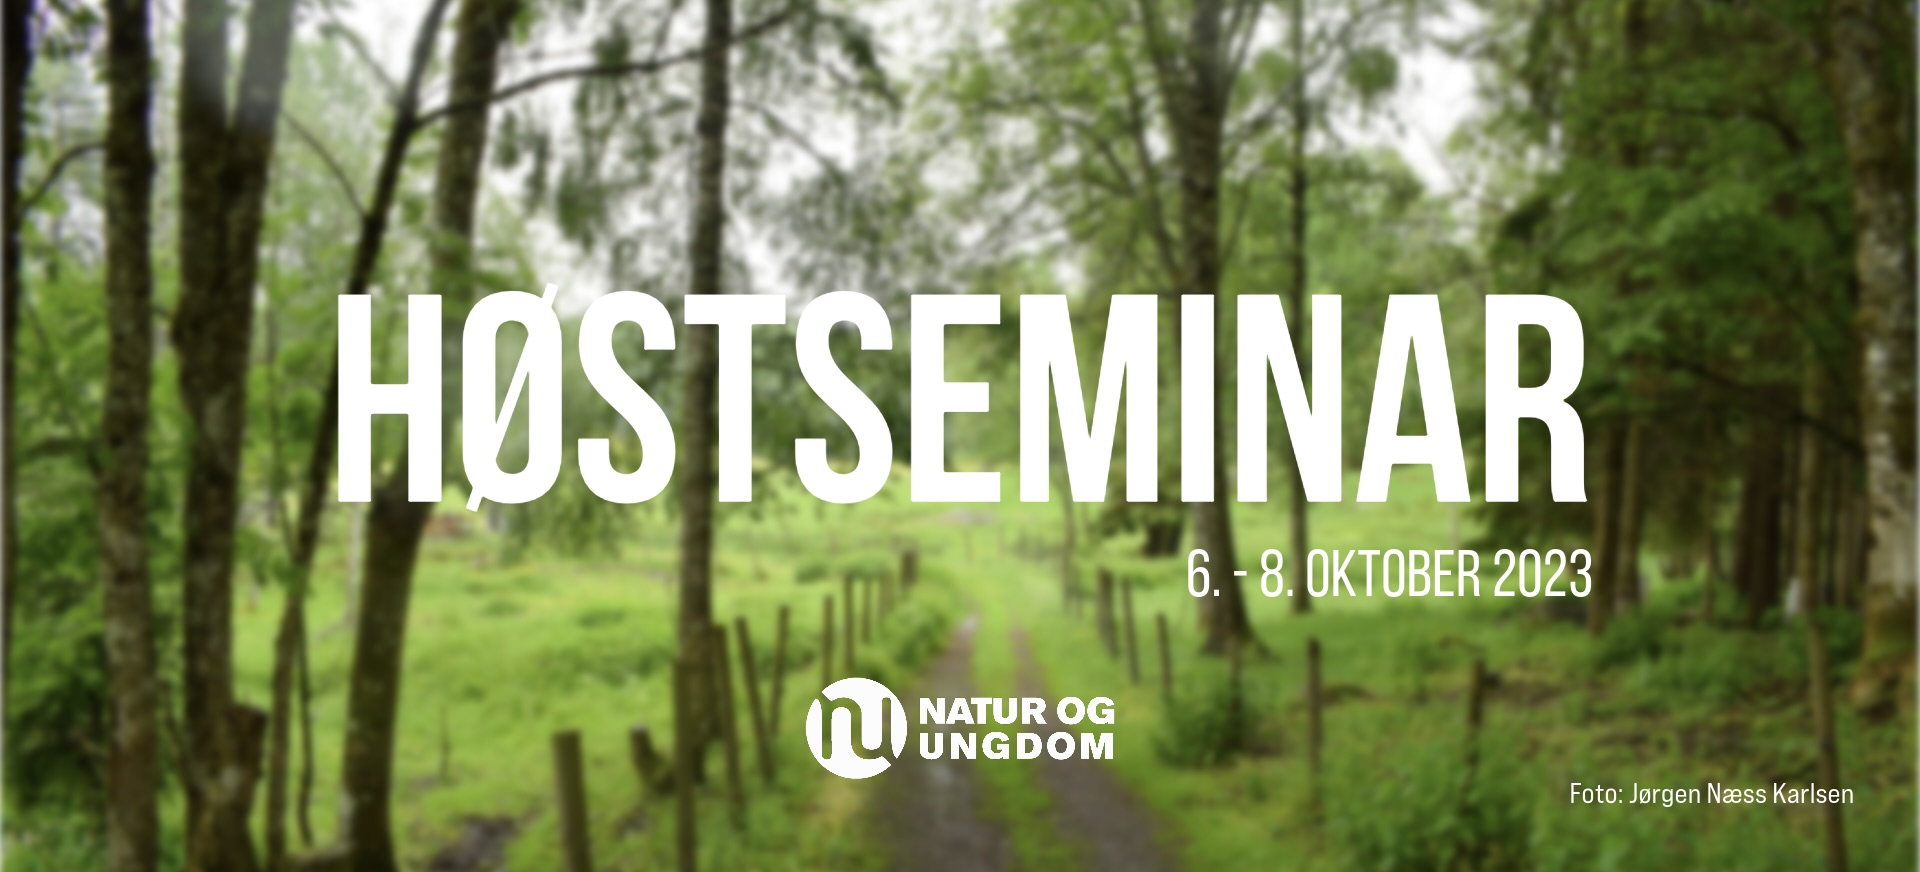 Grønn skog med teksten: Høstseminar, 6. - 8. oktober 2023.
Foto: Jørgen Næss Karlsen